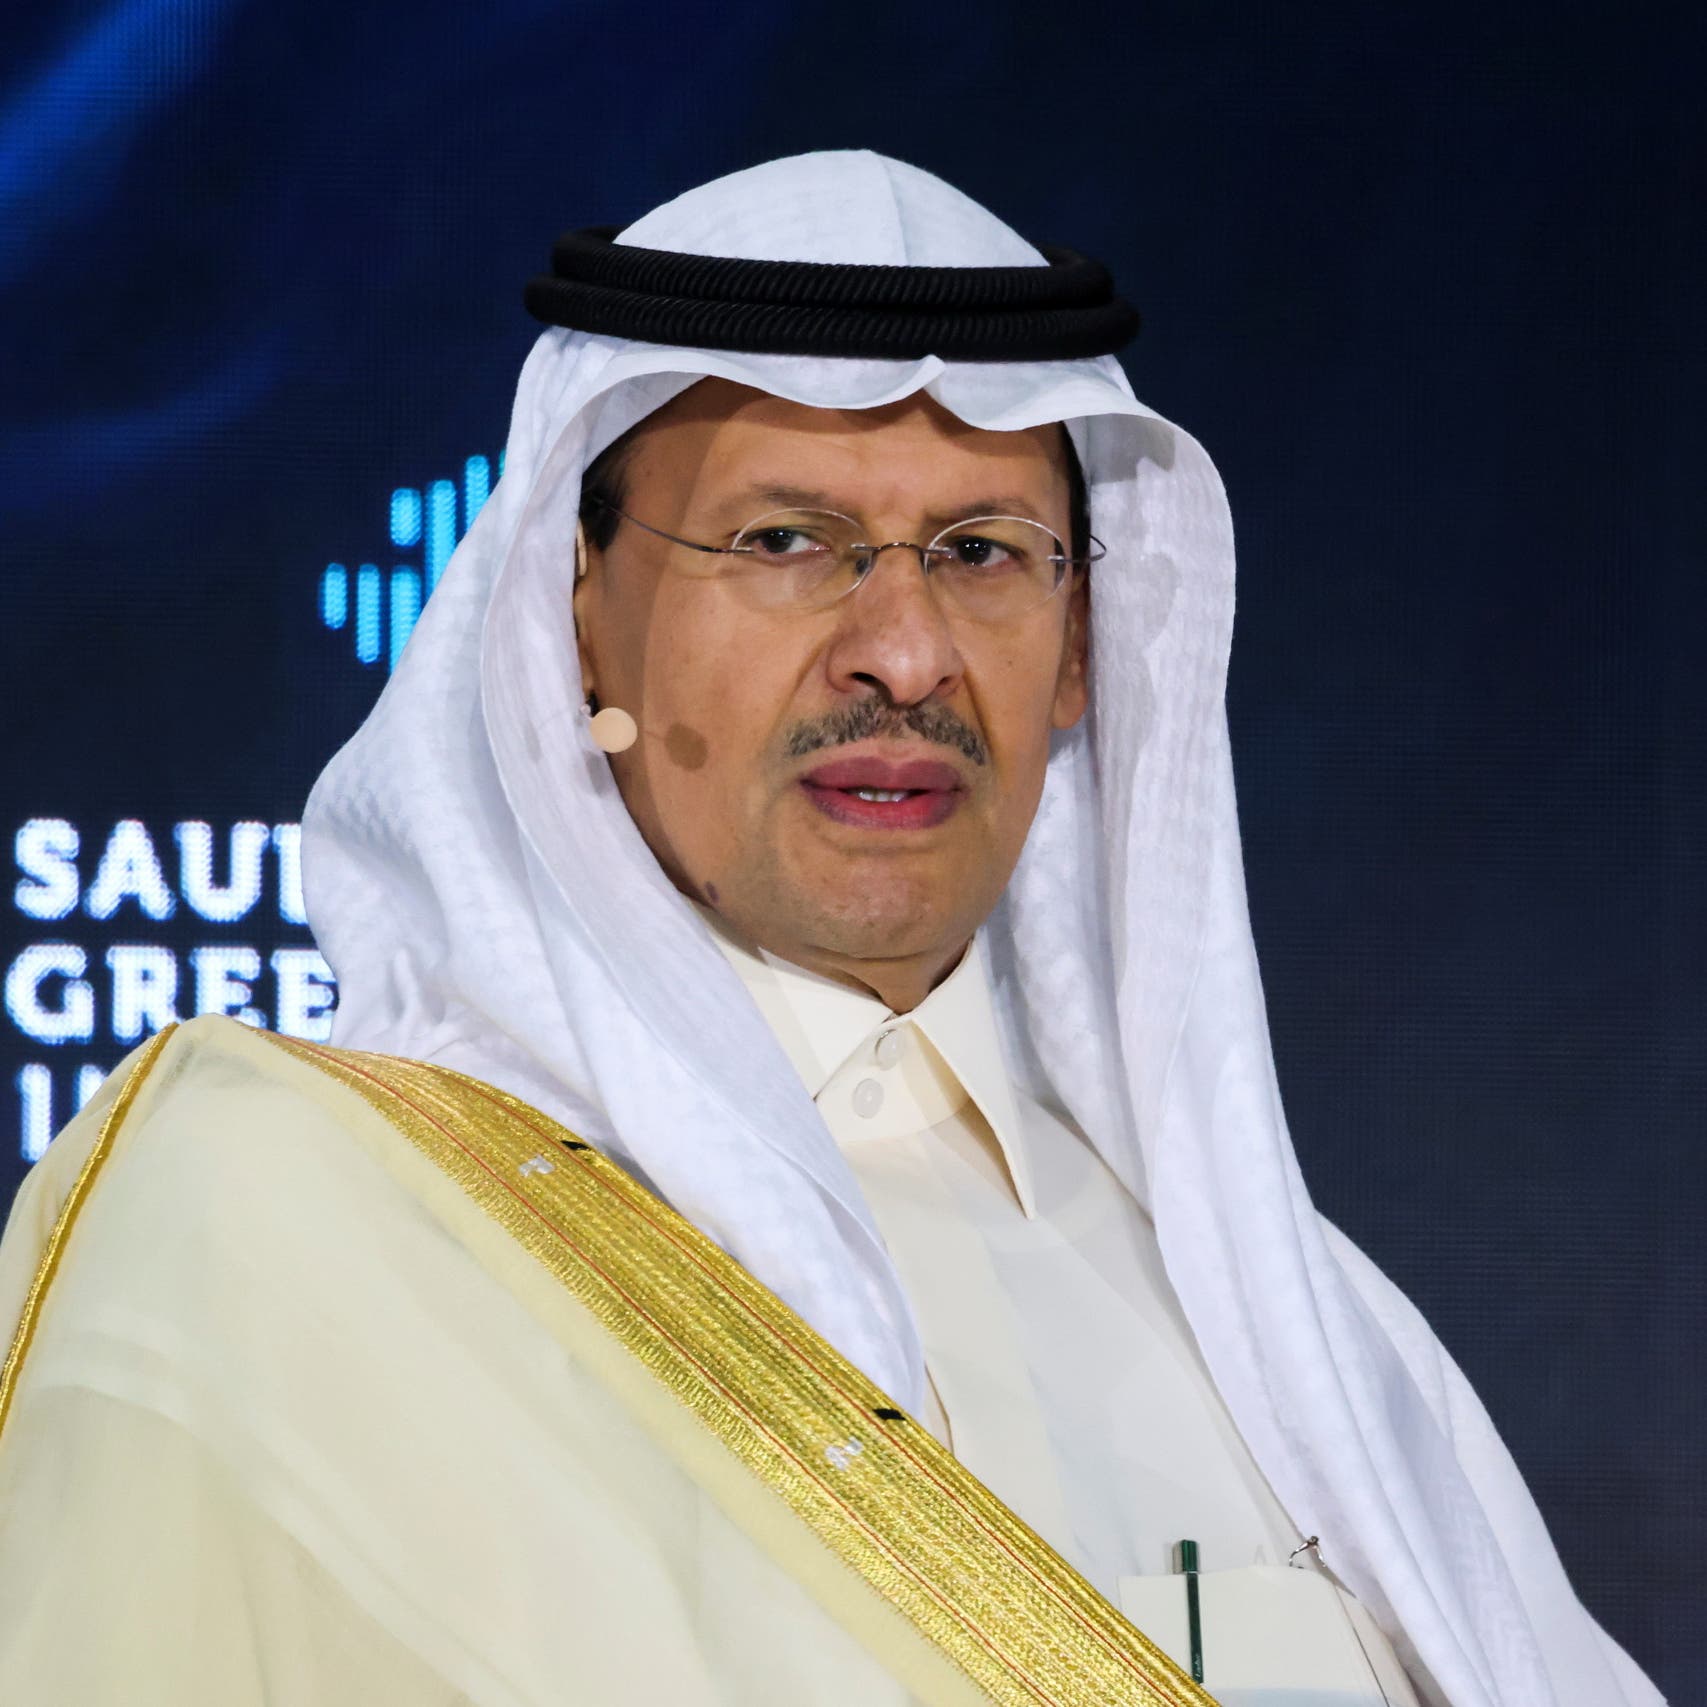 وزير الطاقة السعودي: نفاد الطاقة الفائضة واقع قائم وعلى العالم العمل بشكل مشترك